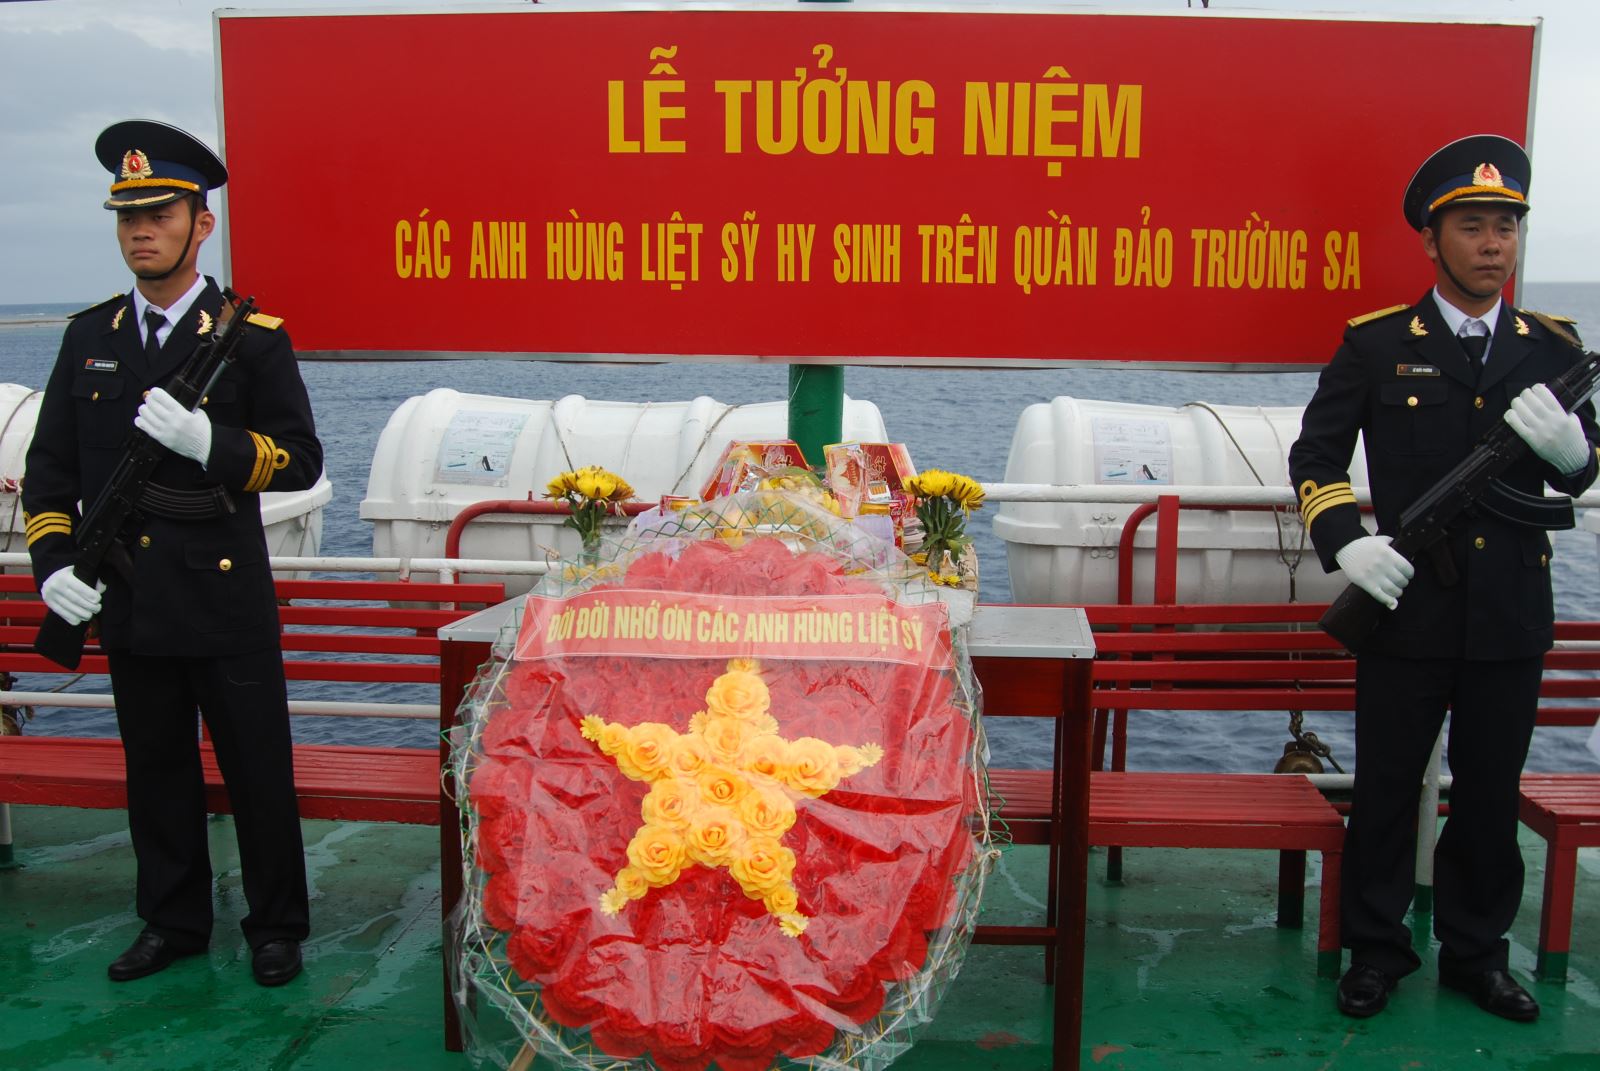 Trang nghiêm Lễ tưởng niệm các anh hùng liệt sĩ đã hy sinh trên quân đảo Trường Sa. (Ảnh chụp năm 2018)